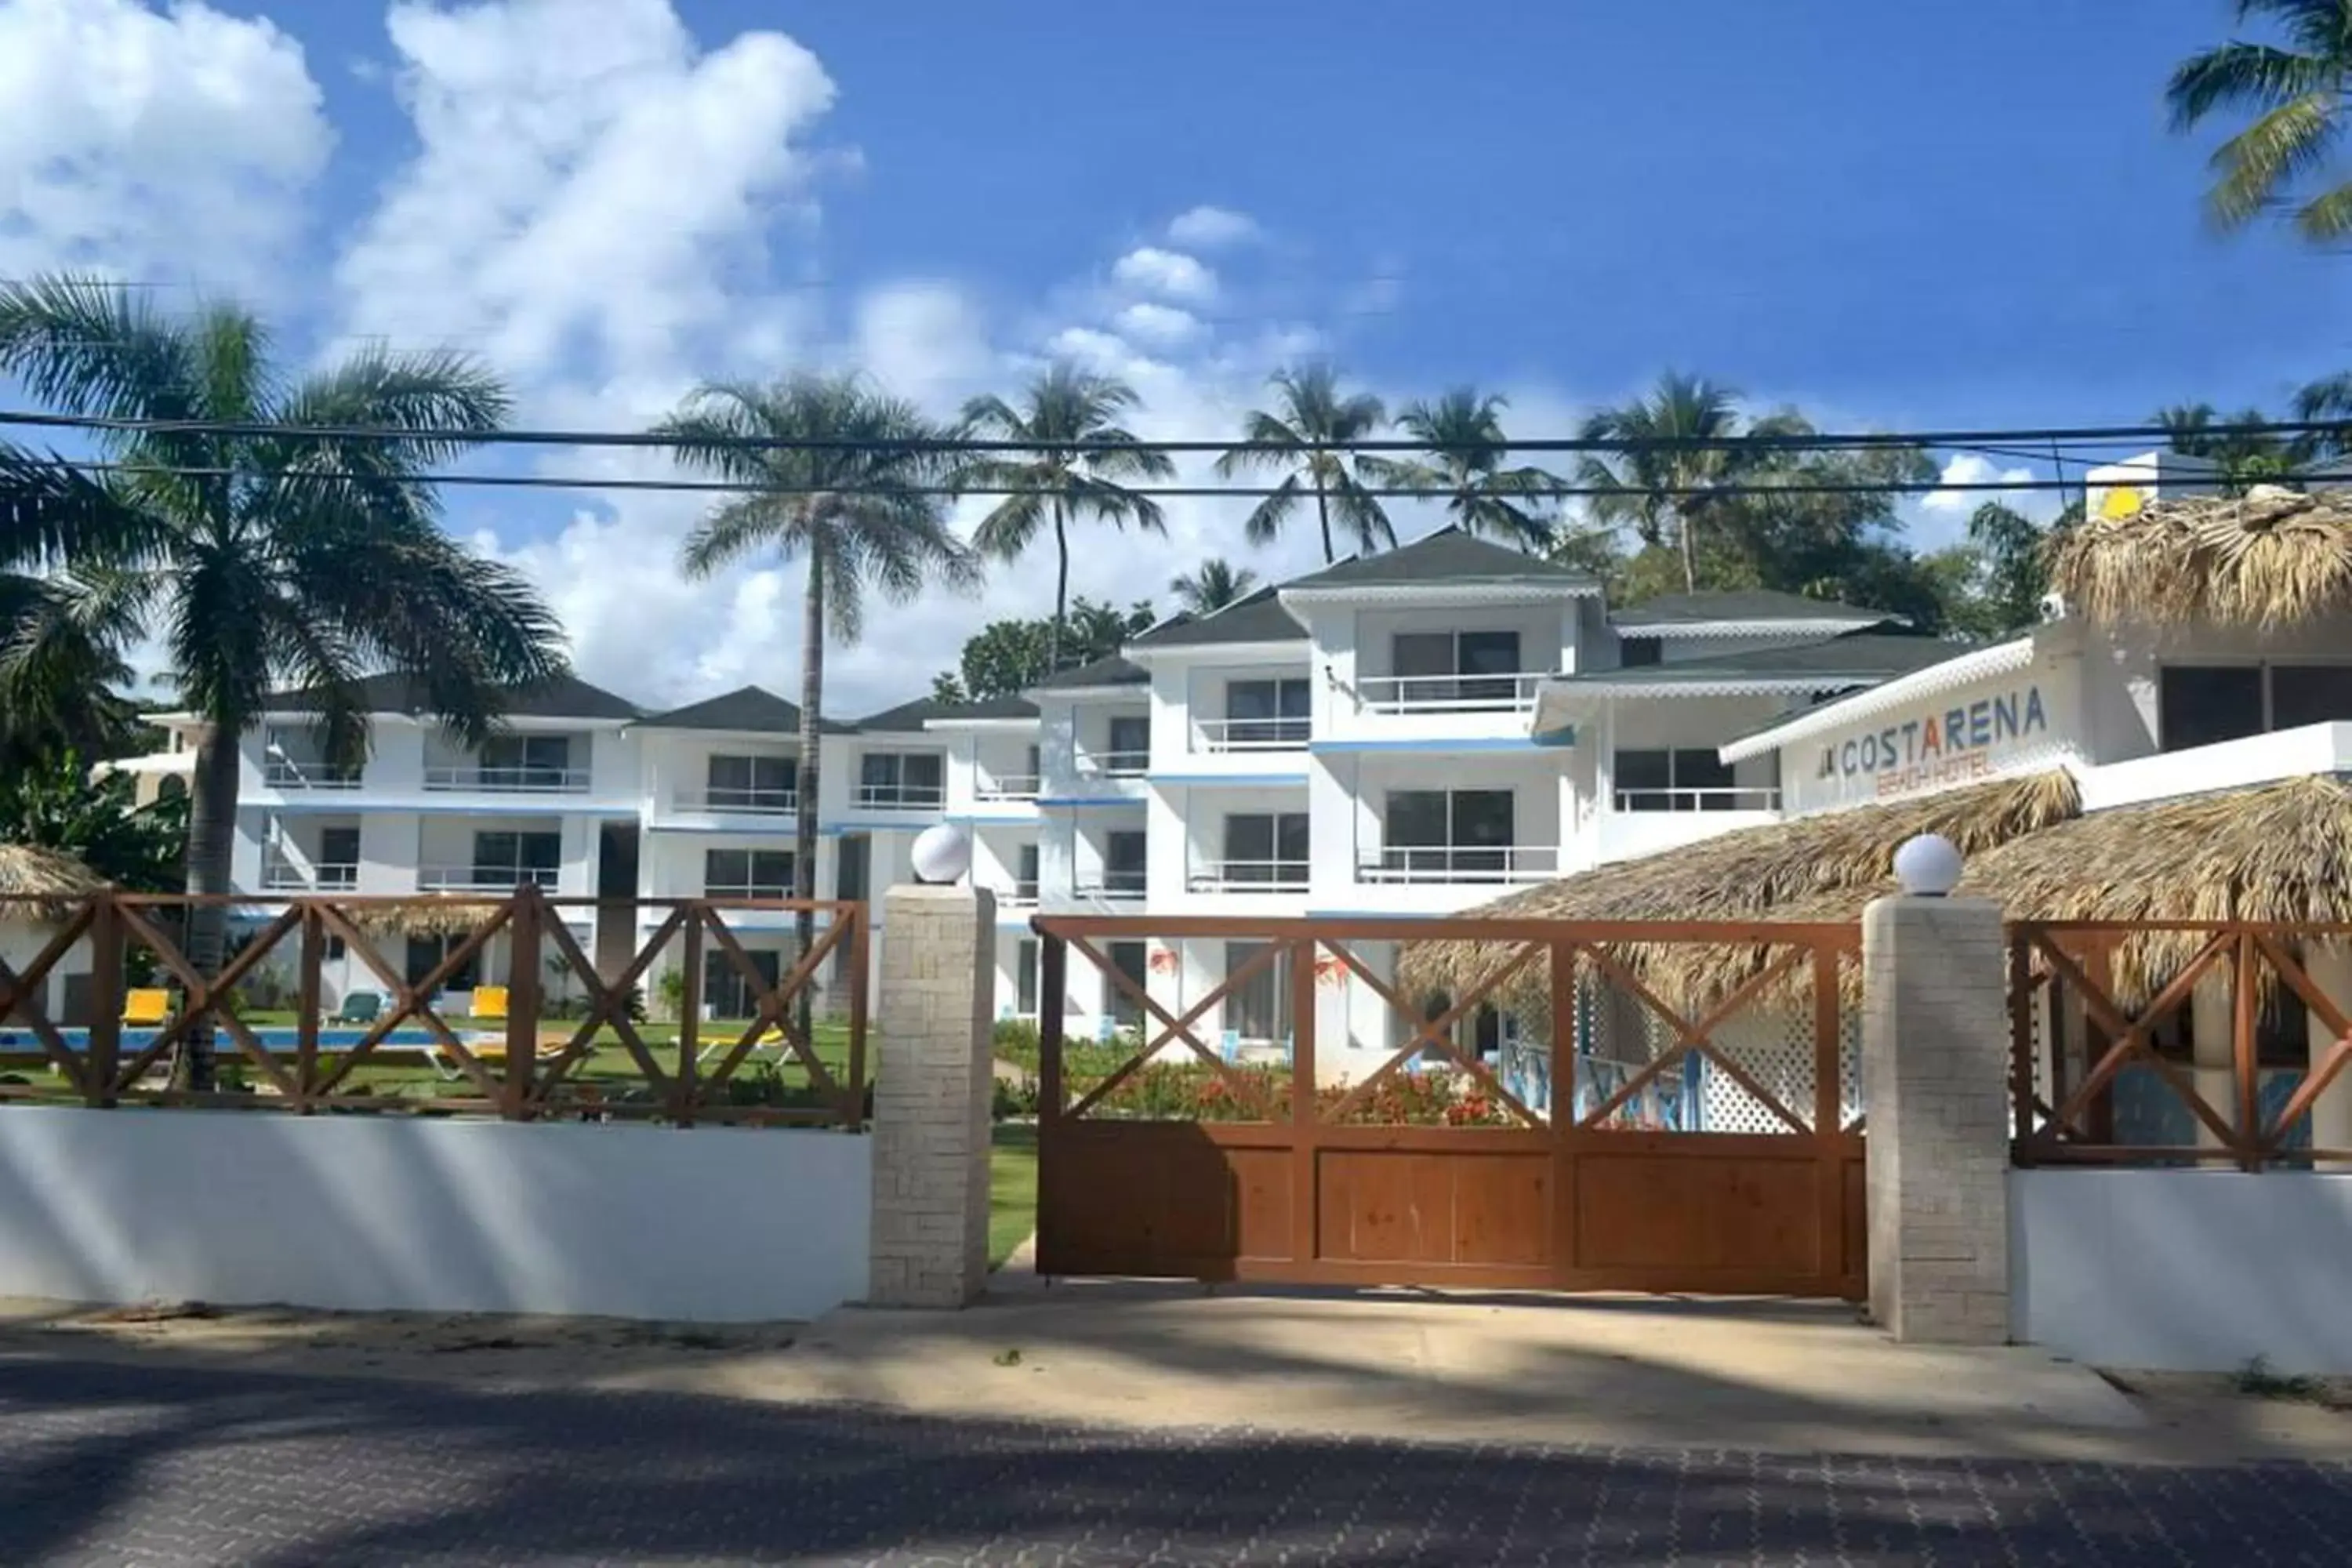 Facade/entrance, Property Building in Costarena Beach Hotel